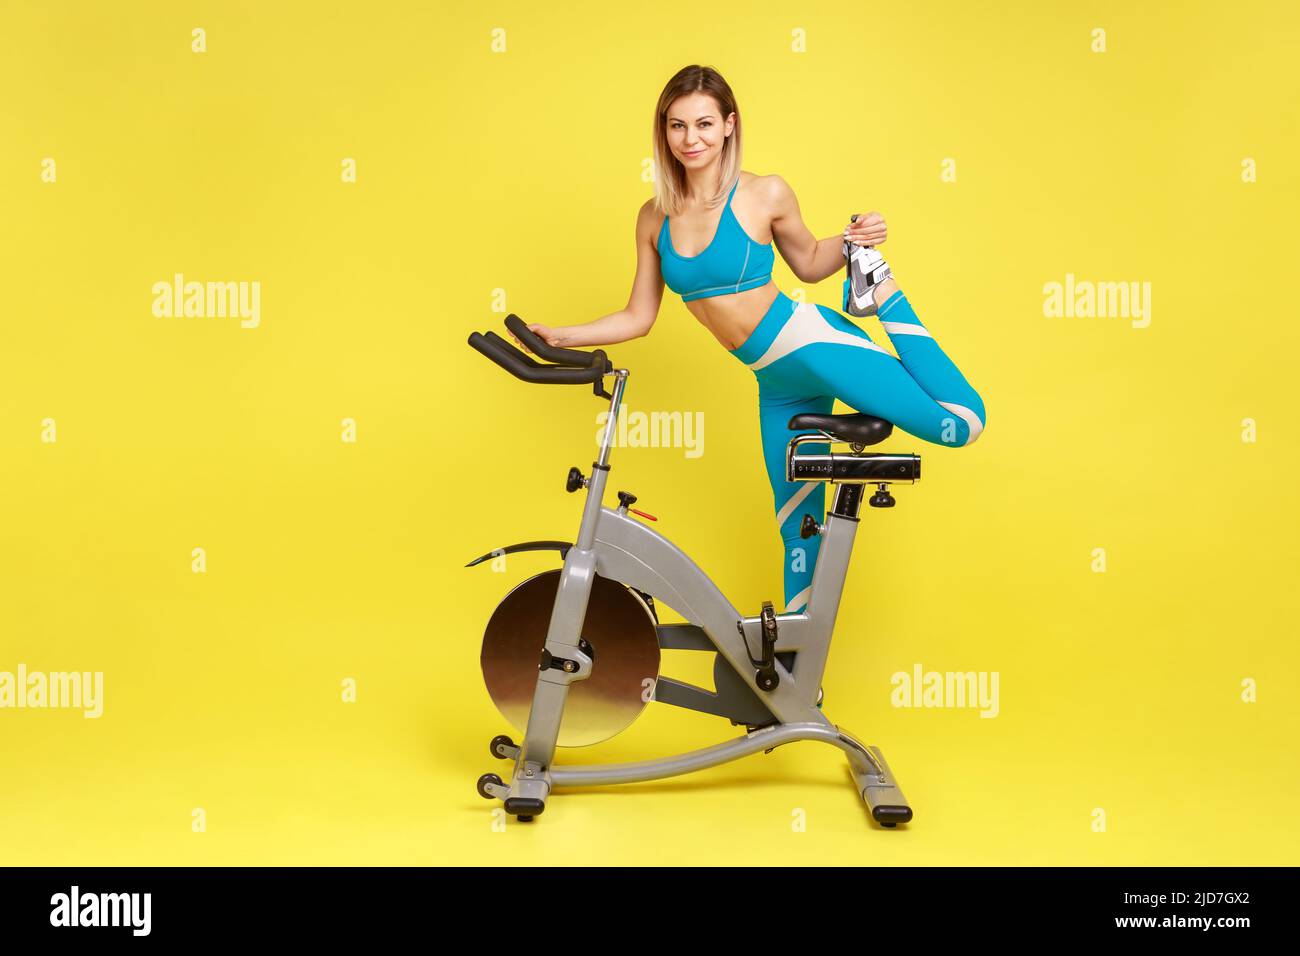 Ritratto completo di donna sottile con corpo perfetto in piedi su una gamba della cyclette, guardando la fotocamera, indossando abbigliamento sportivo blu. Studio interno girato isolato su sfondo giallo. Foto Stock